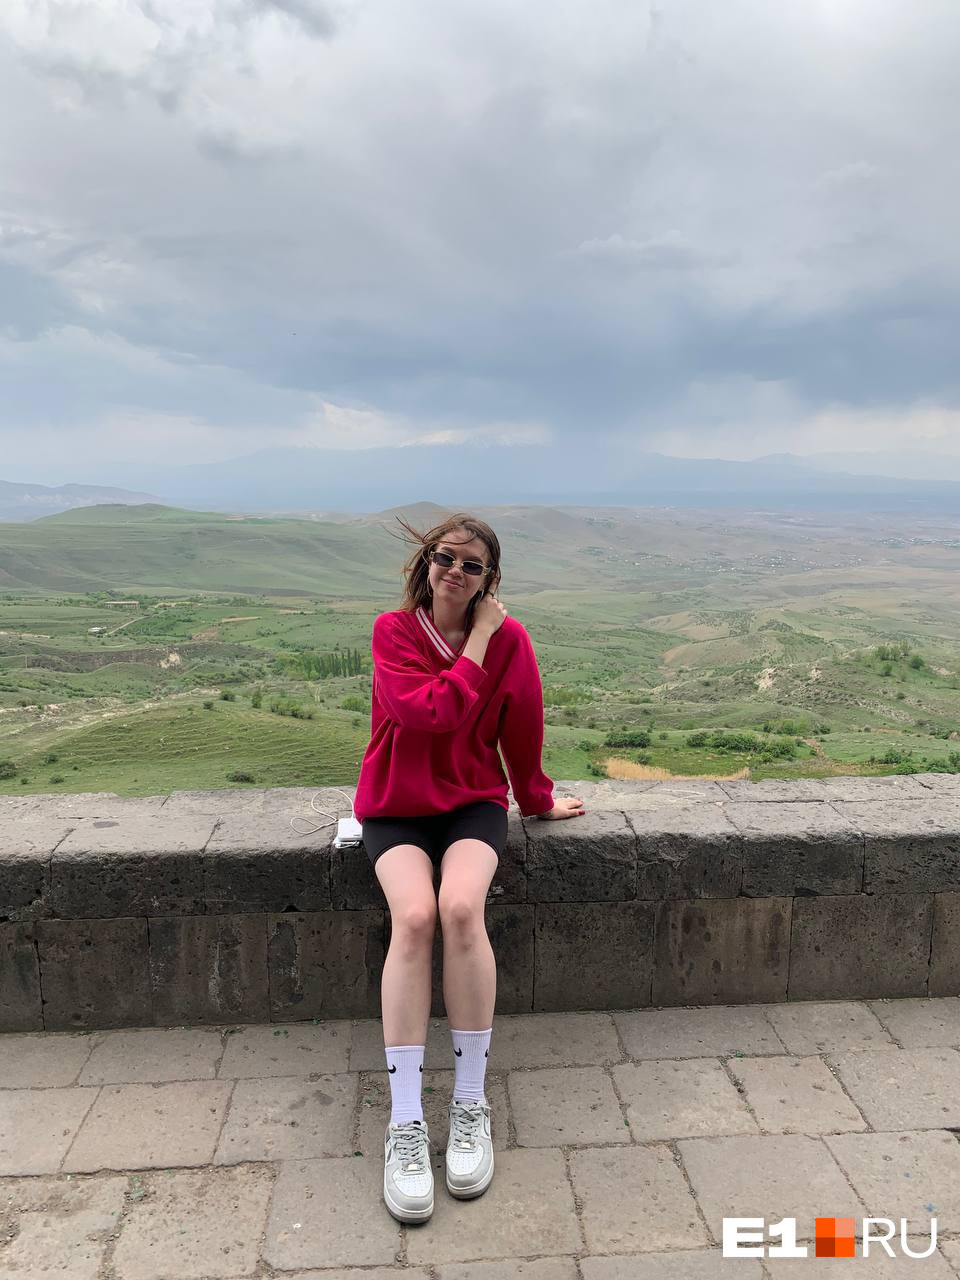 — Невероятно теплая и бесконечно красивая Армения! Отдых среди гор и чистого воздуха был самым-самым лучшим! — убеждена Инна